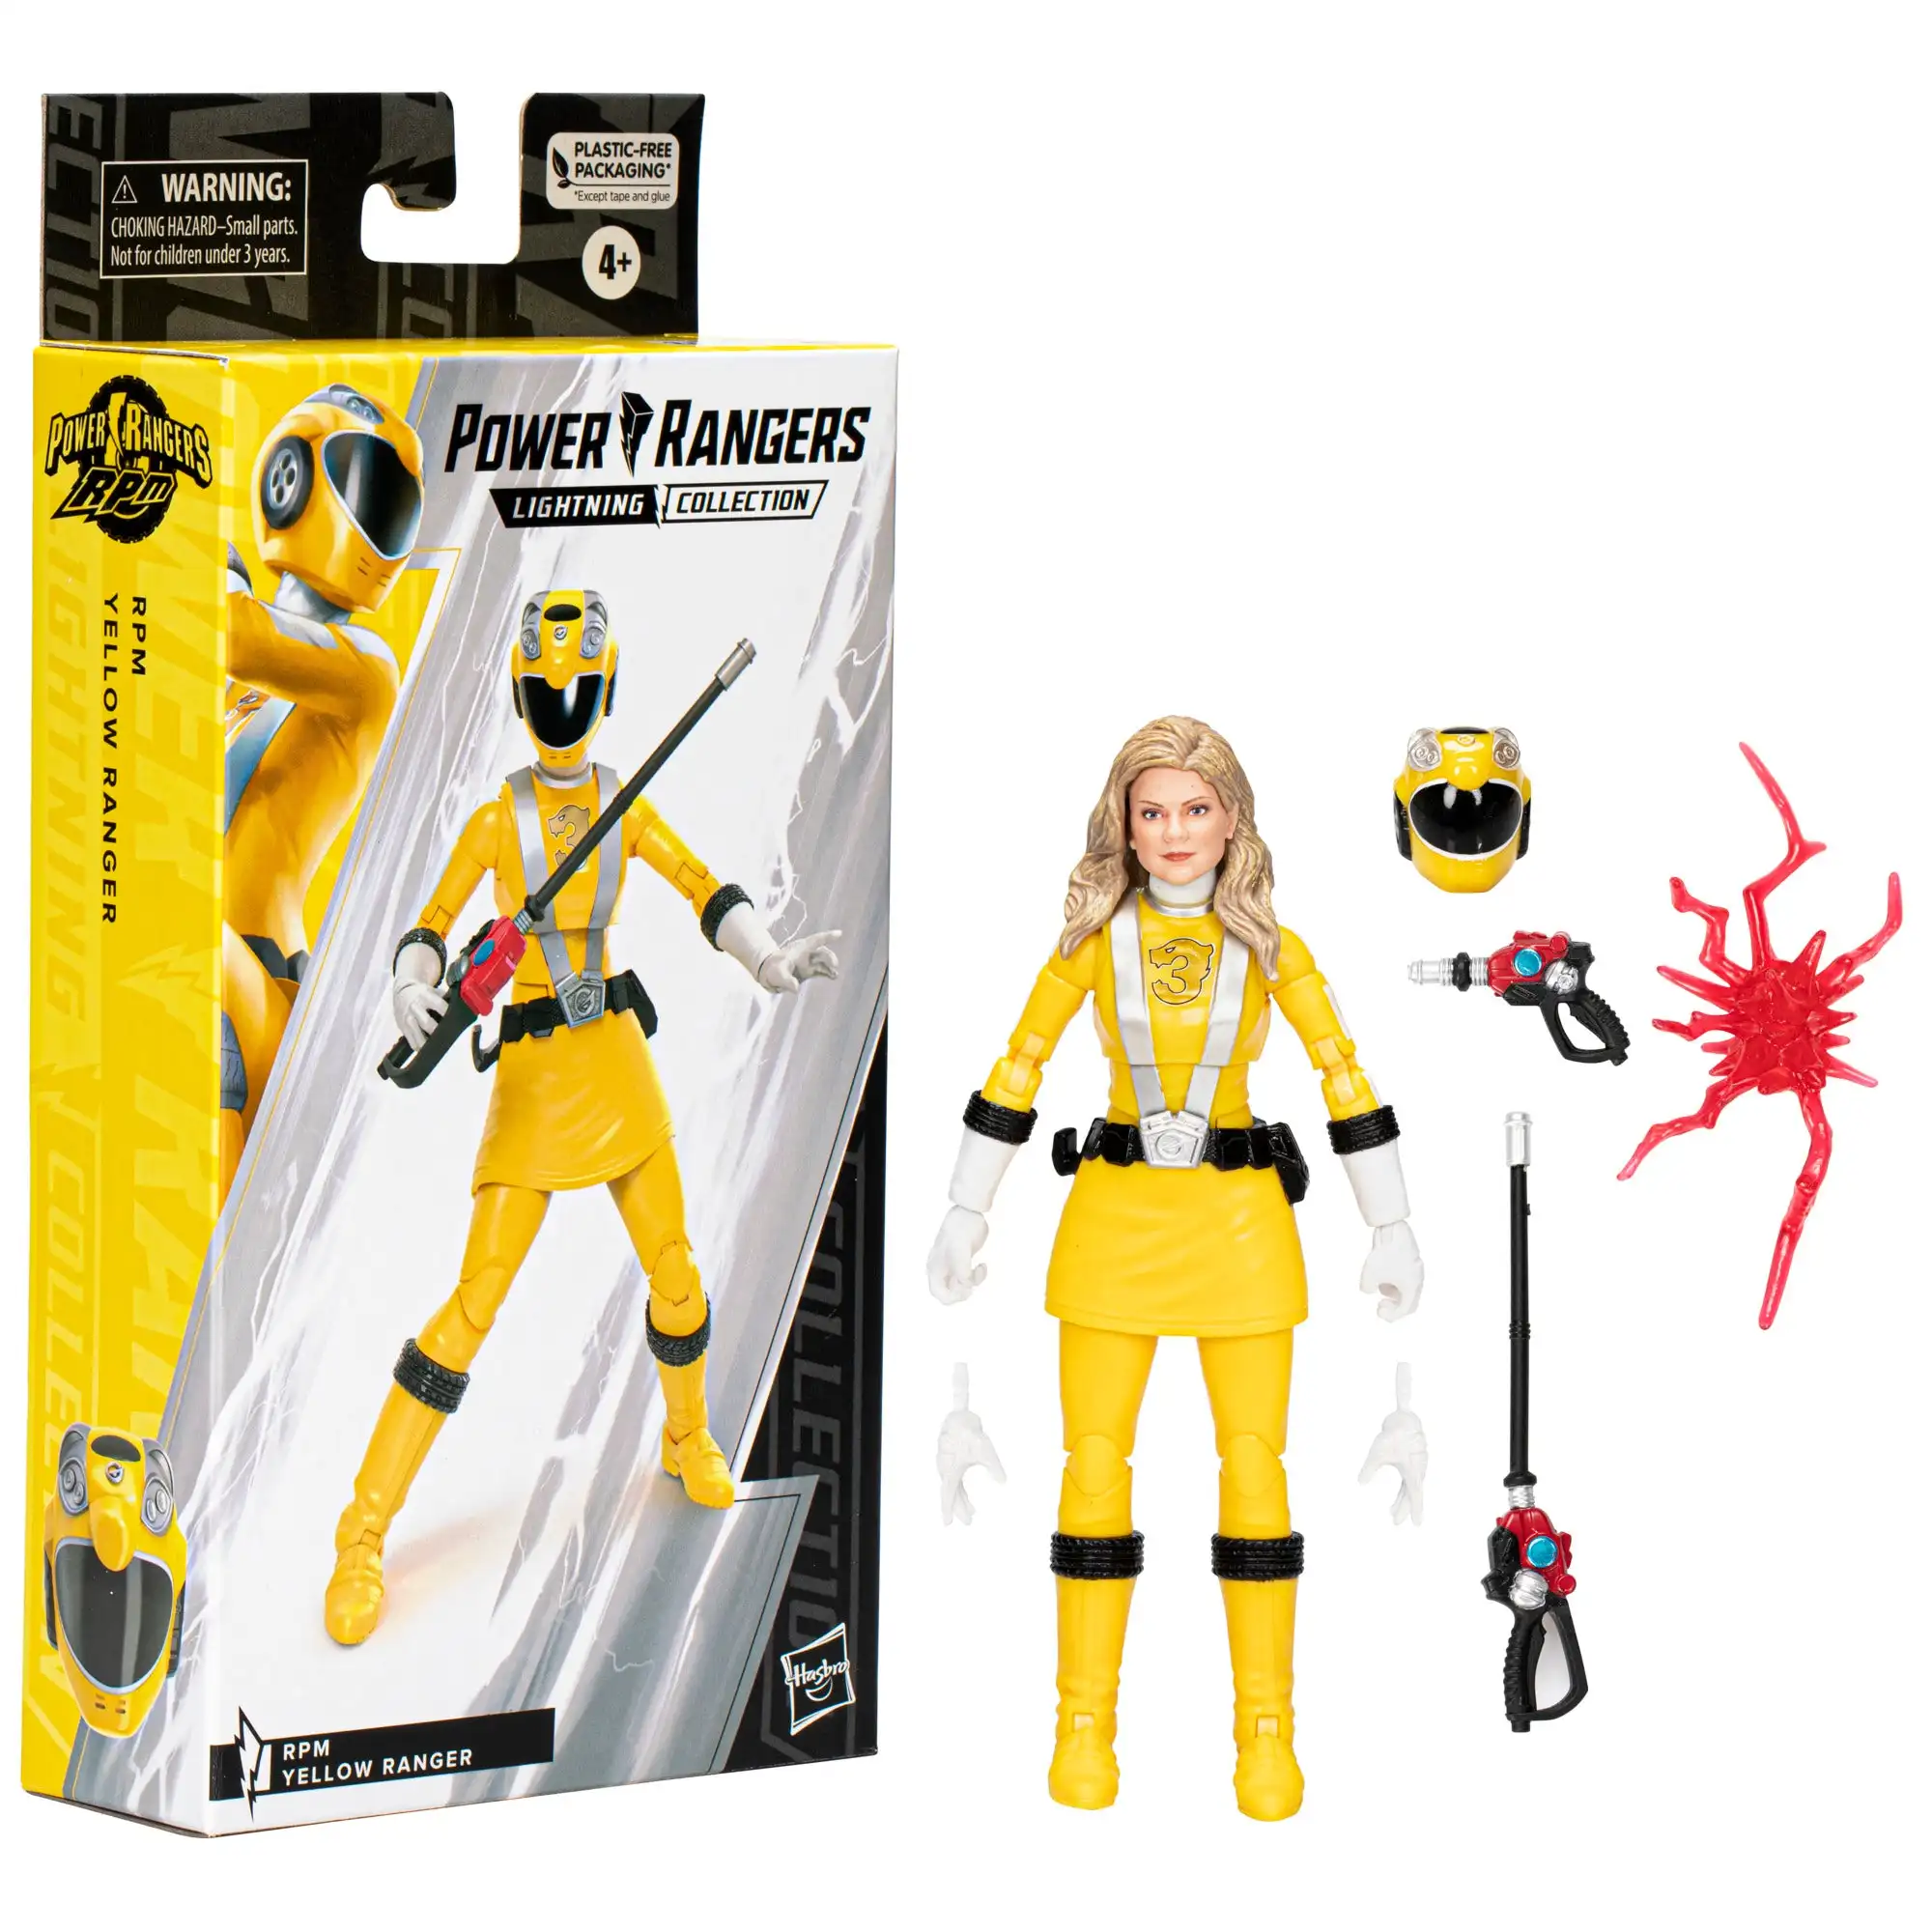 Коллекция Power Rangers Lightning, RPM, Желтый Рейнджер, 6-дюймовая коллекционная фигурка премиум-класса, игрушка с аксессуарами